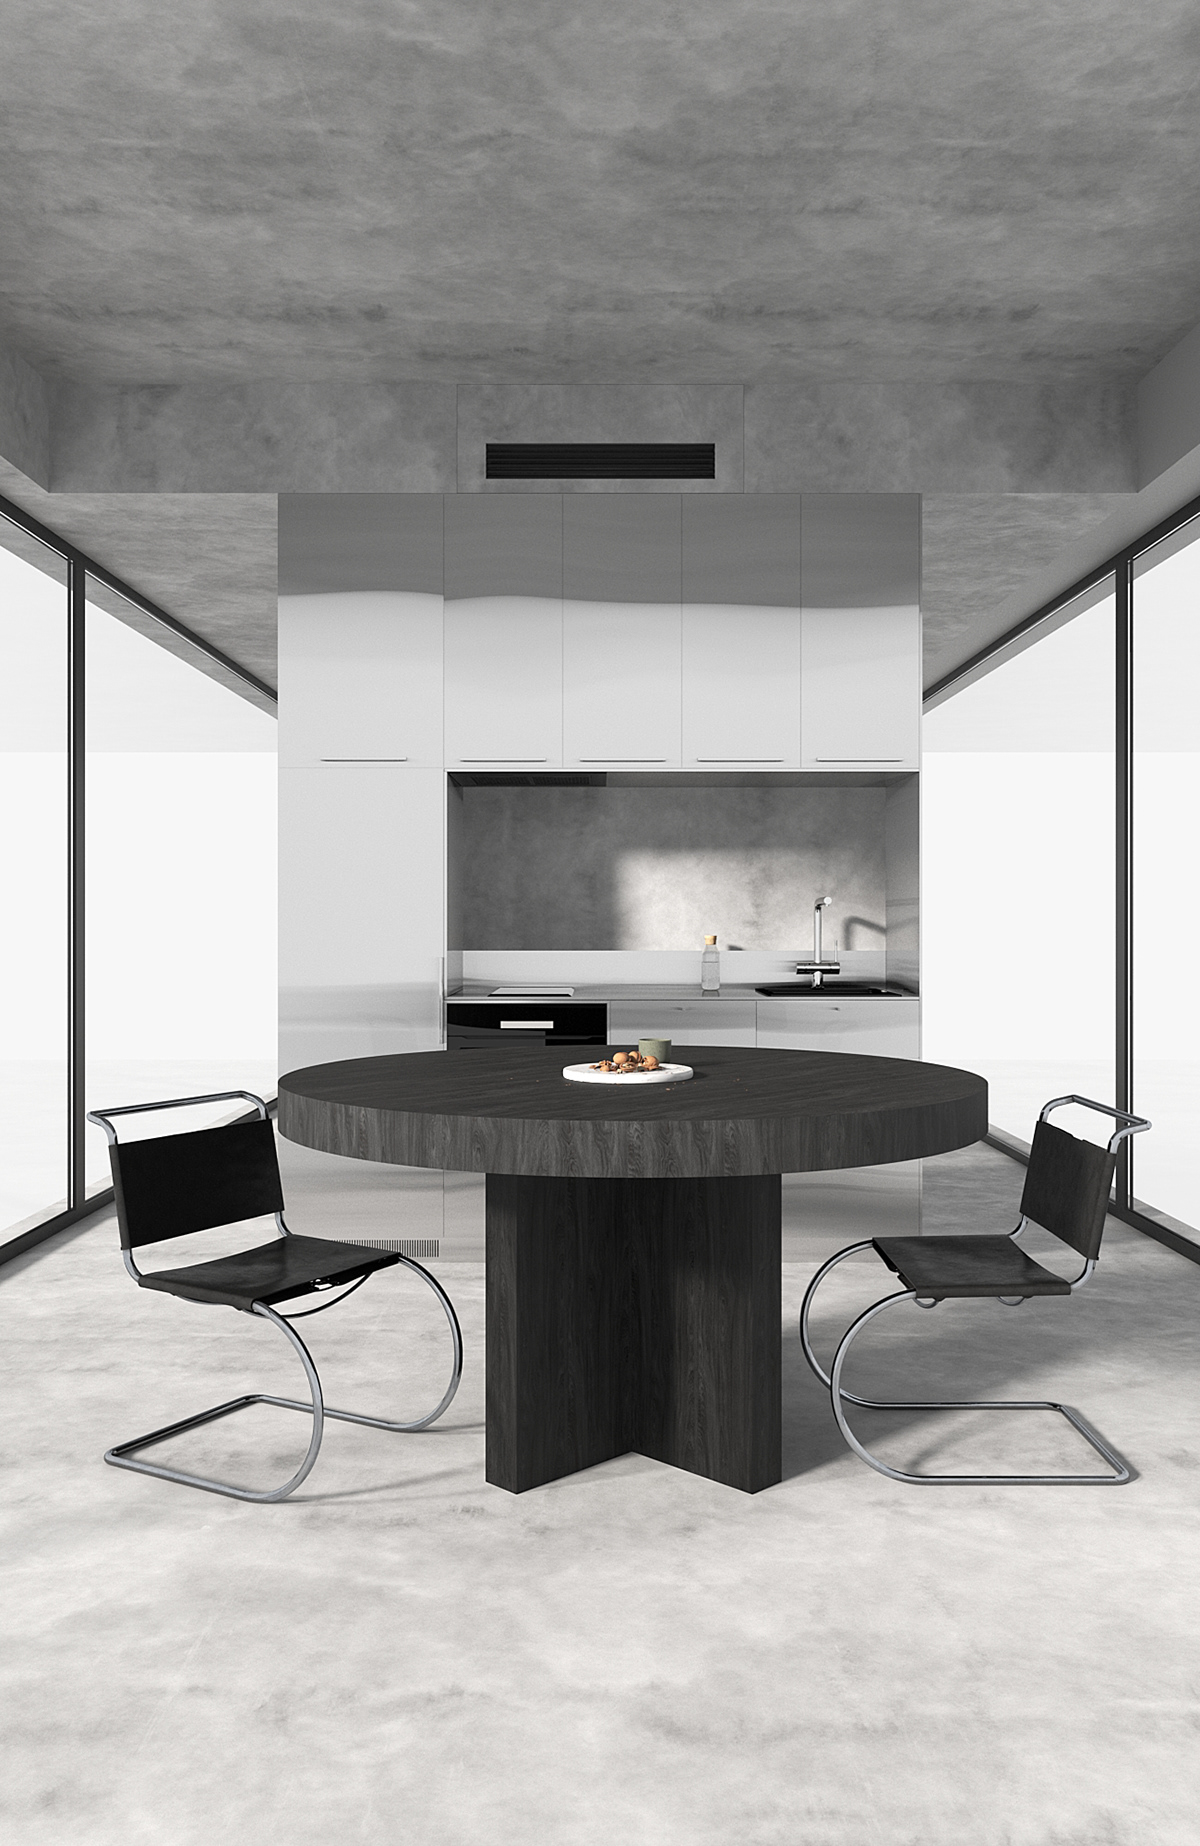 stainless steel interior design  Render visualization Space design